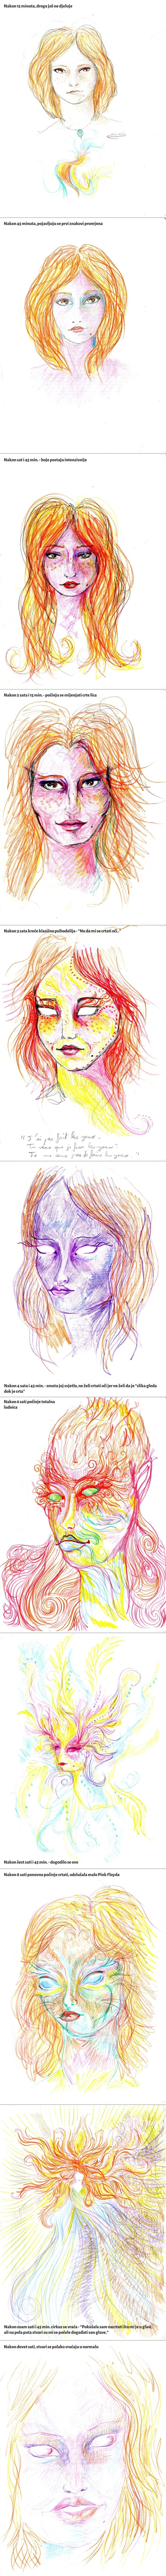 GALERIJA: Umjetnica uzela LSD i krenula crtati - ovo su rezultati